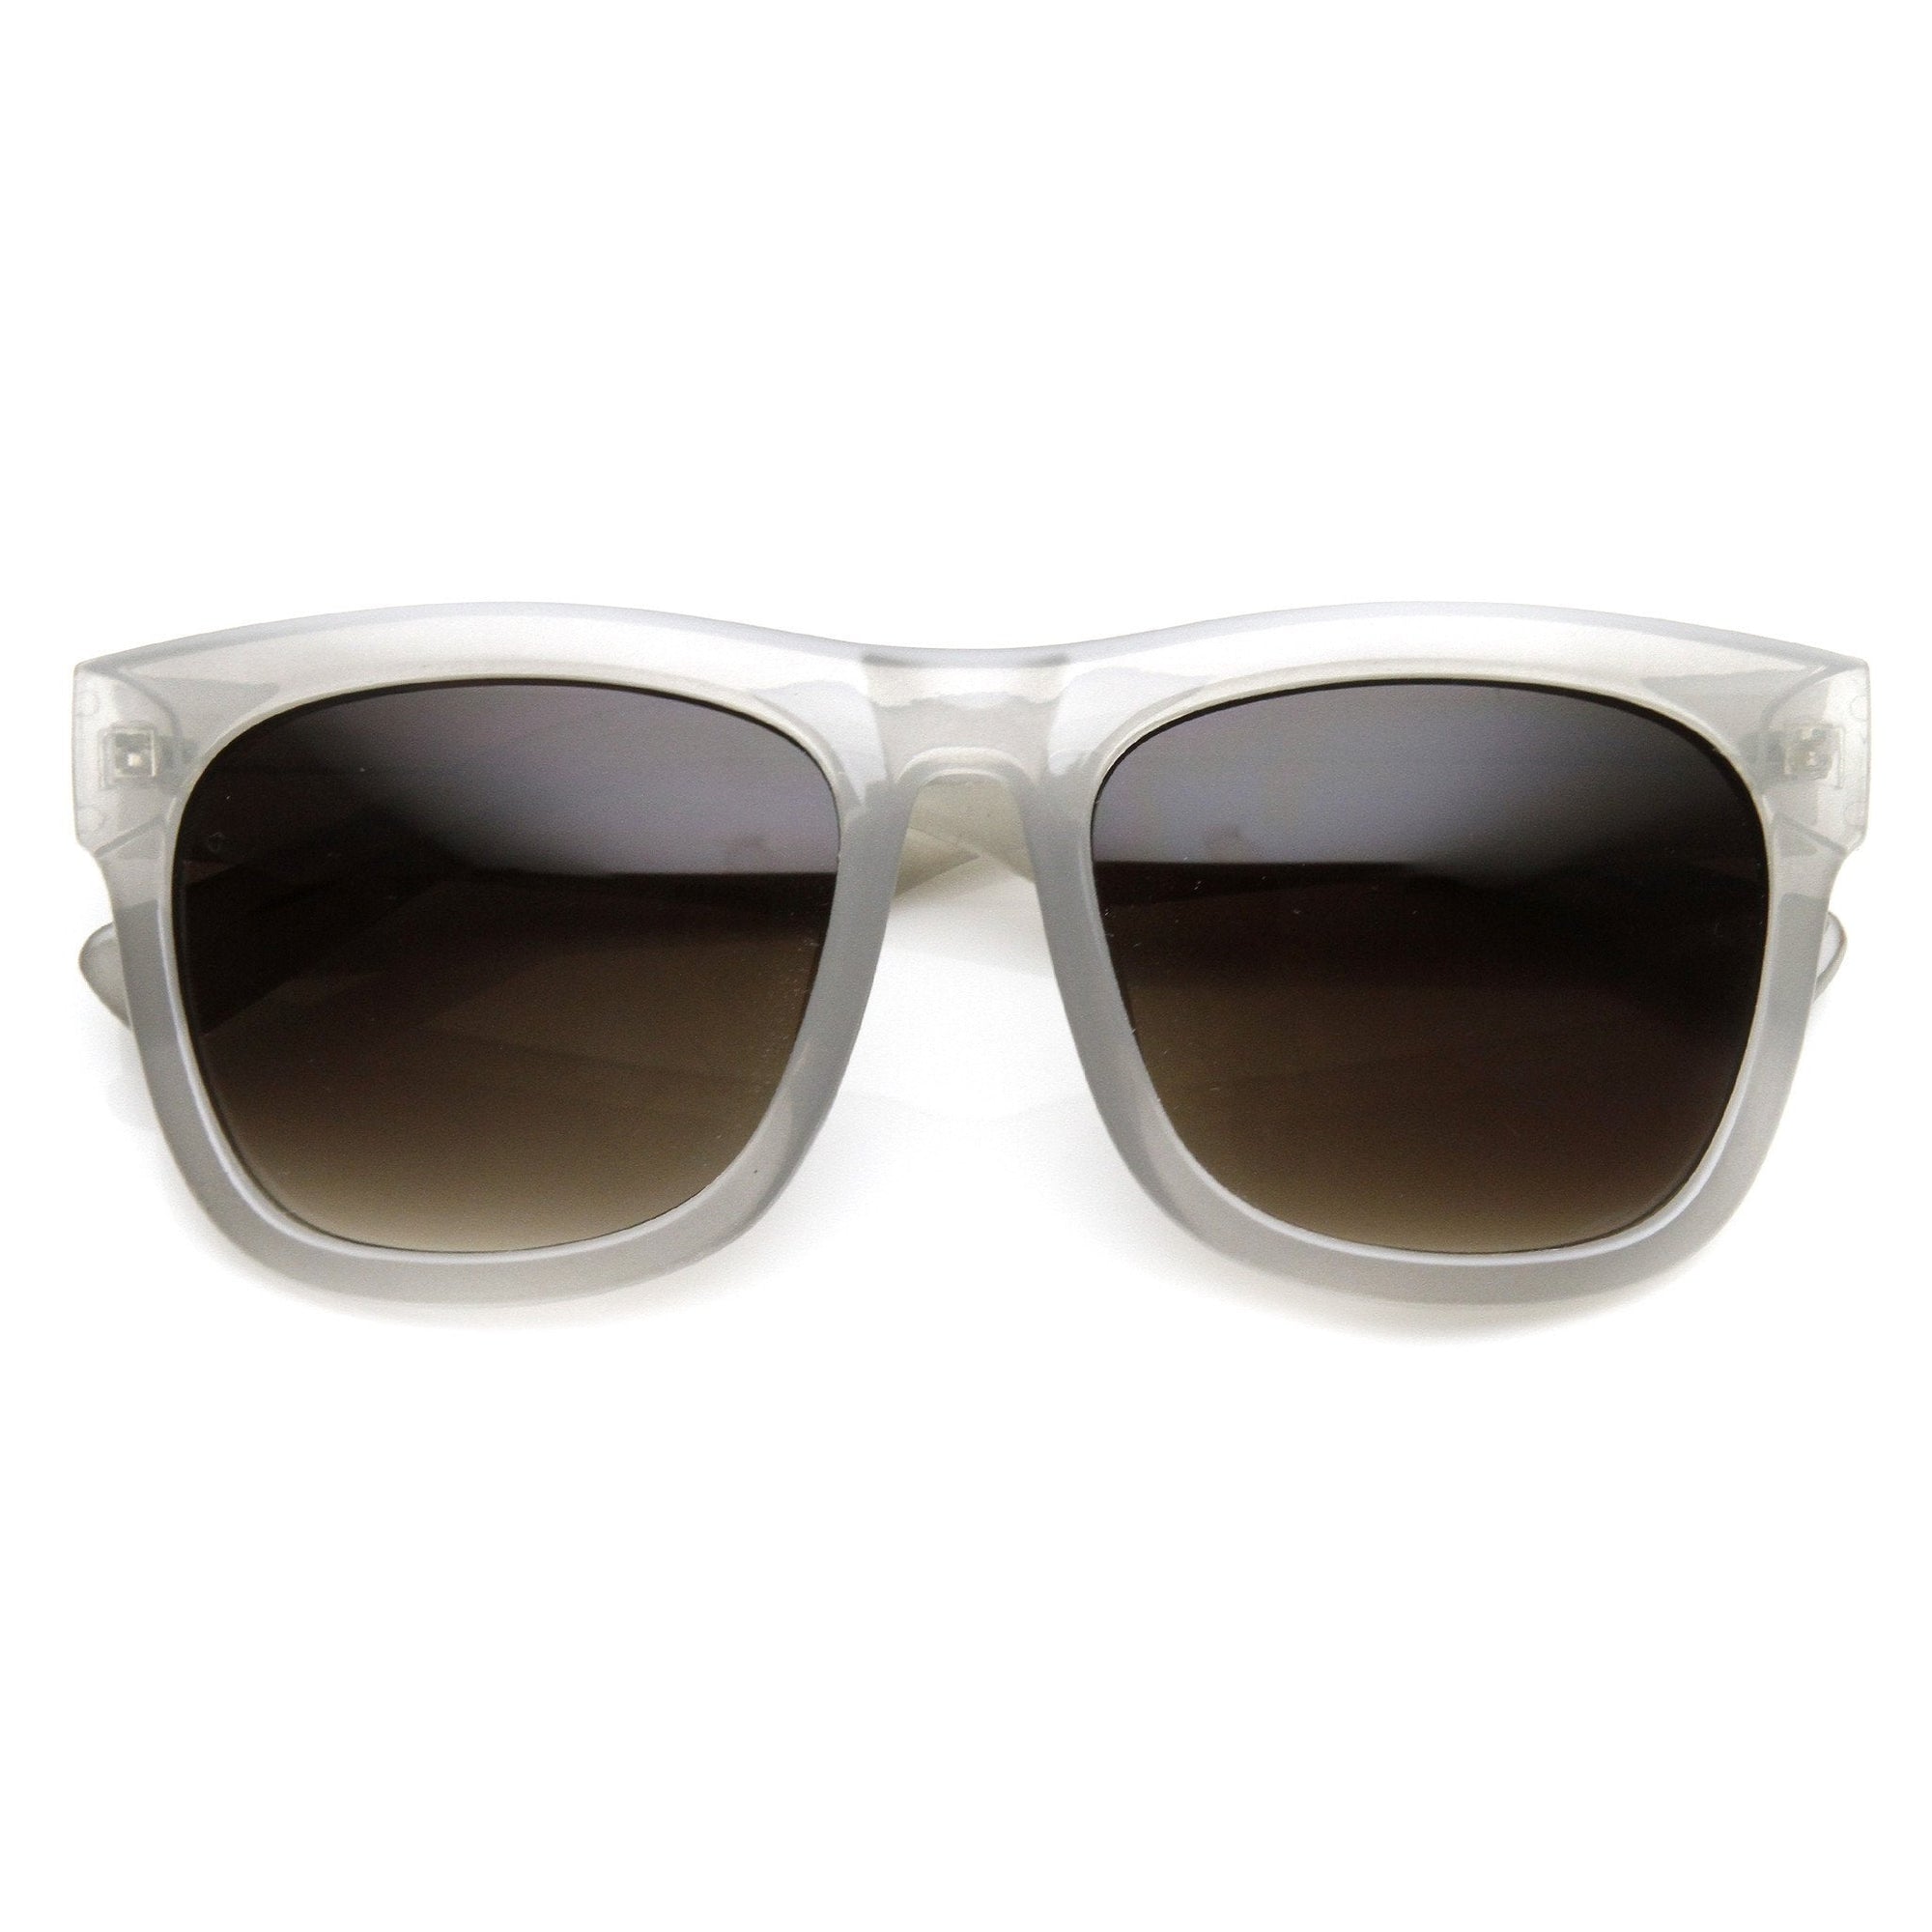 Zerouv + Plus "Harlow" Gafas de sol para mujer con borde de cuernos translúcido de gran tamaño